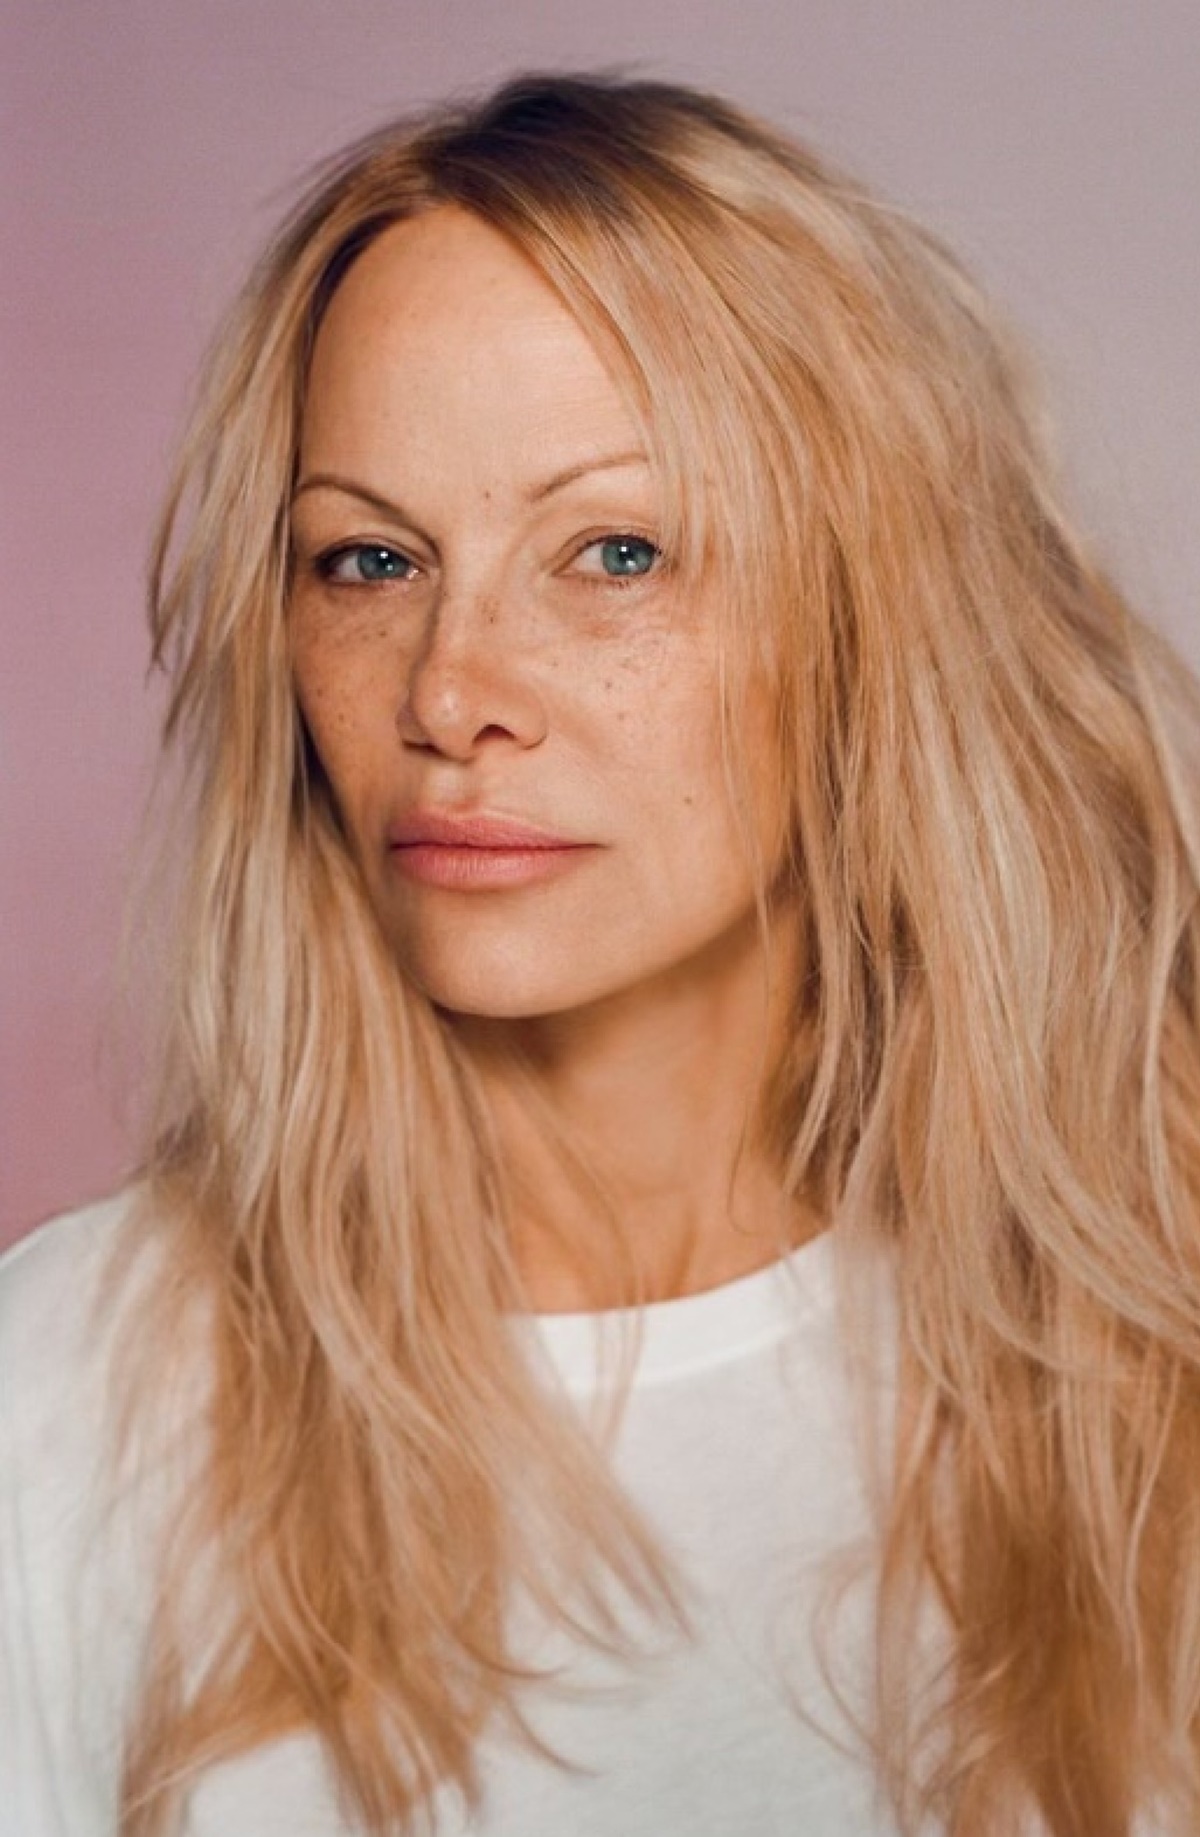 Pamela Anderson smink nélkül is gyönyörűen fest (Fotók!)